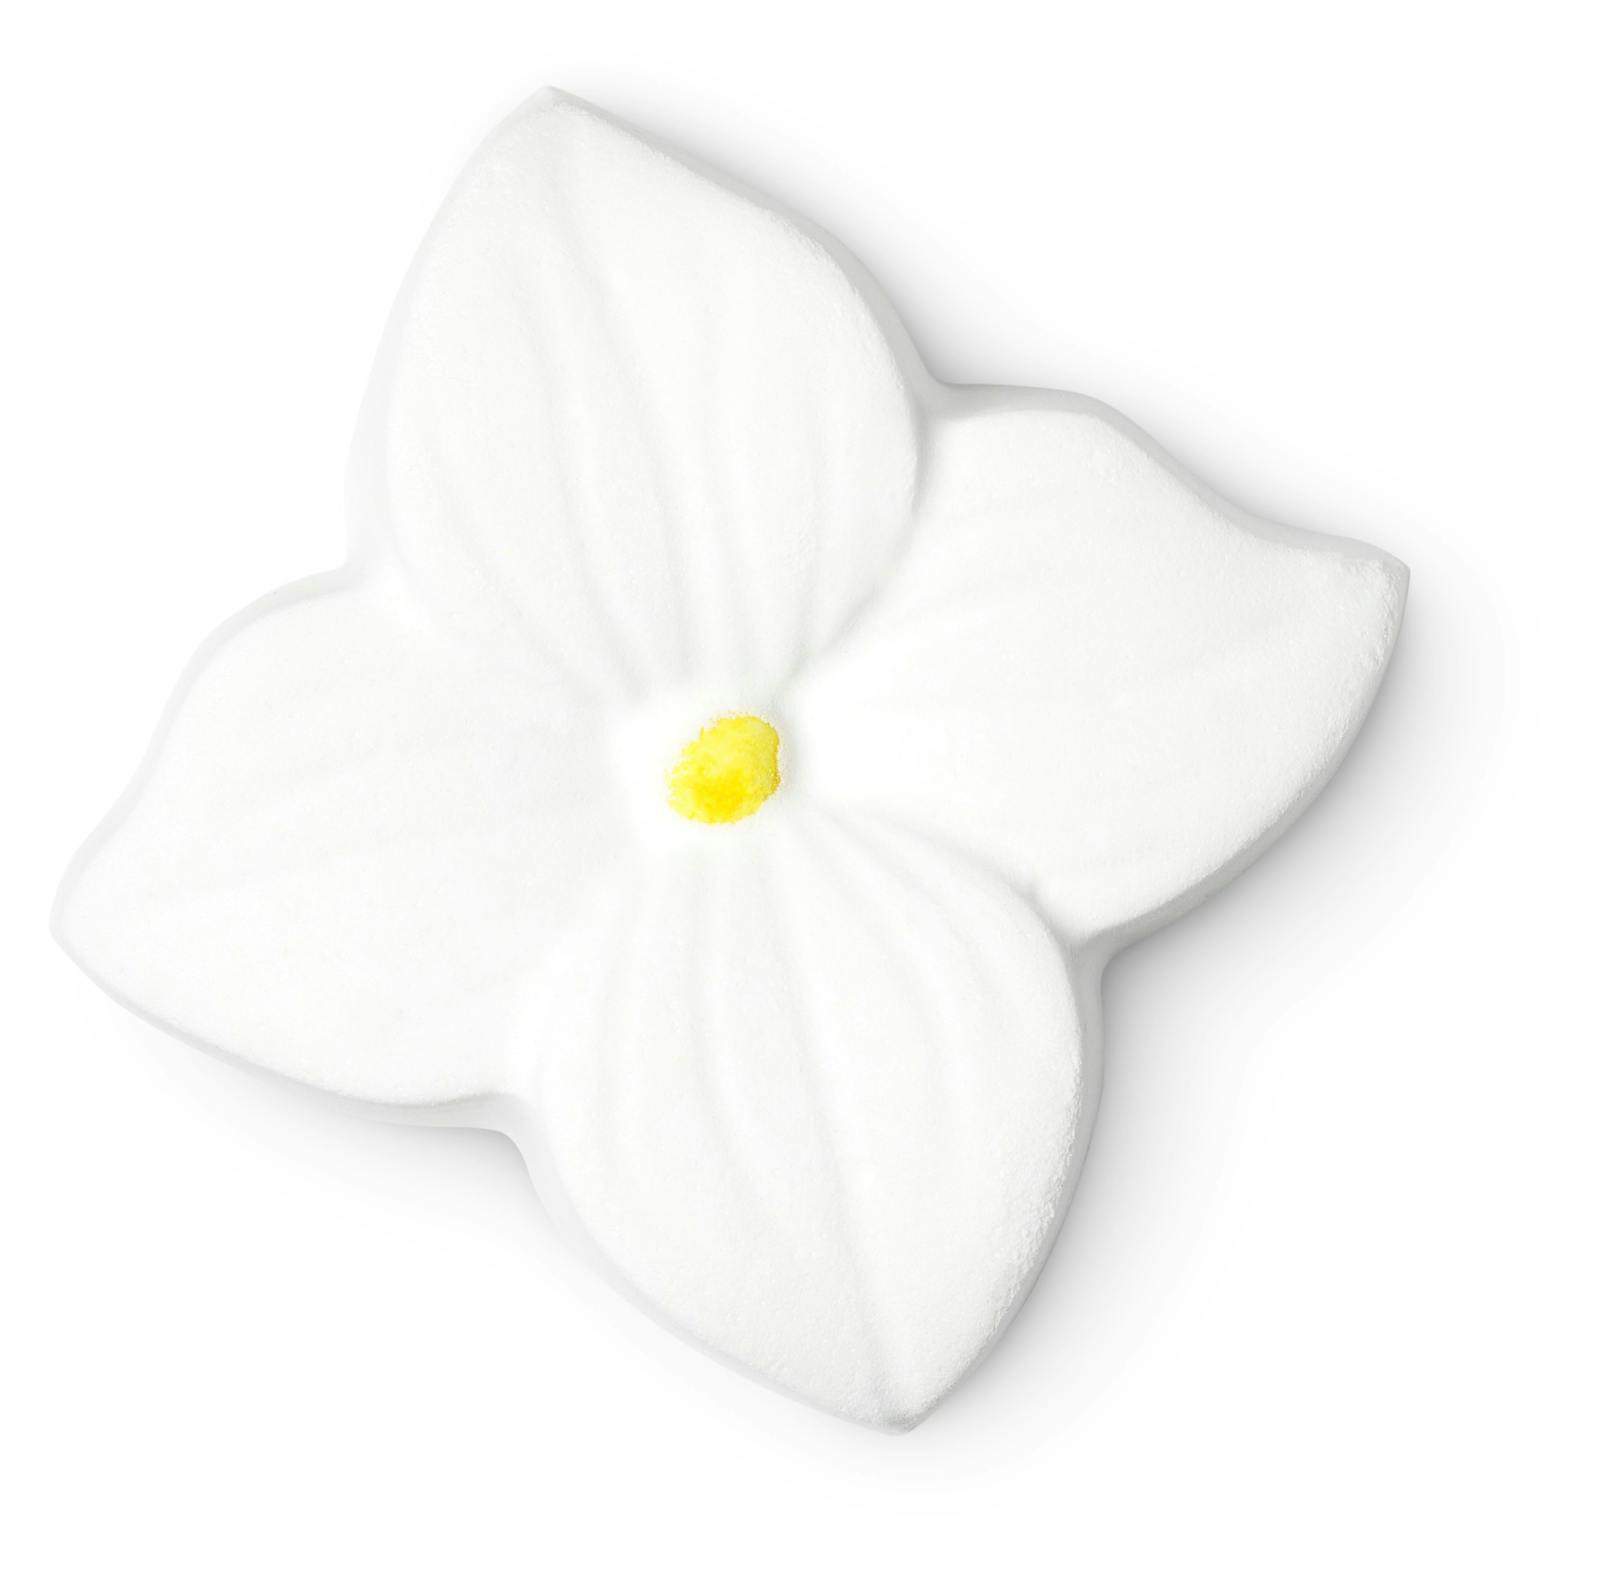 Diese duftende Blume sprudelt davon und enthüllt ein cremig-weißes Bad mit einem raffinierten Duft von Jasmin und Ylang-Ylang. Badebombe "Jasmine" von <strong>Lush</strong> um 5,95 Euro.